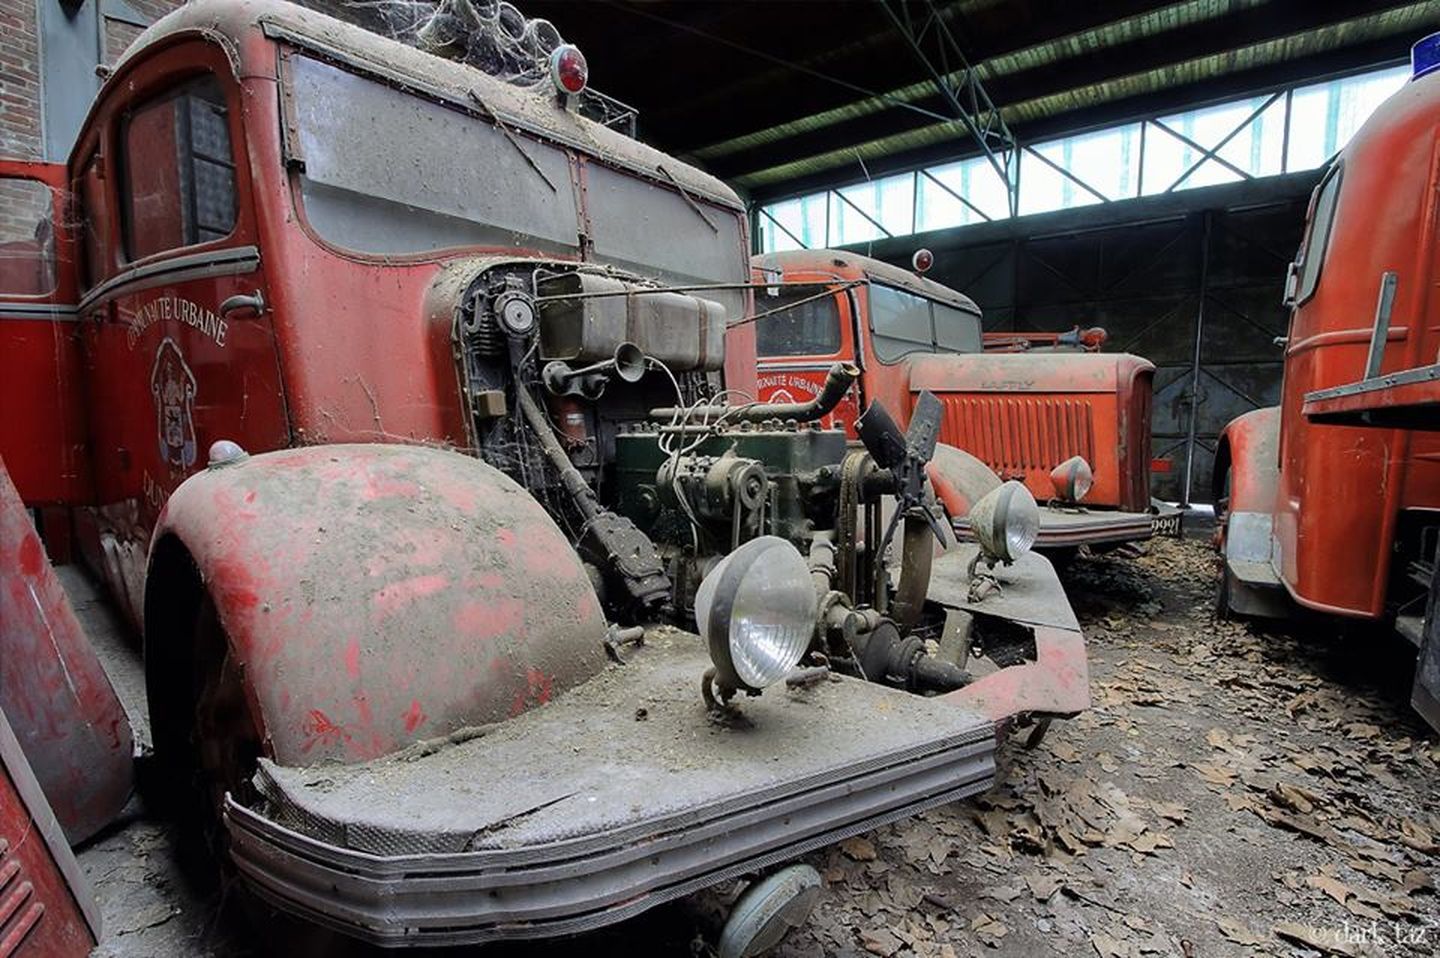 camiones bomberos abandonados francia autoblog 14